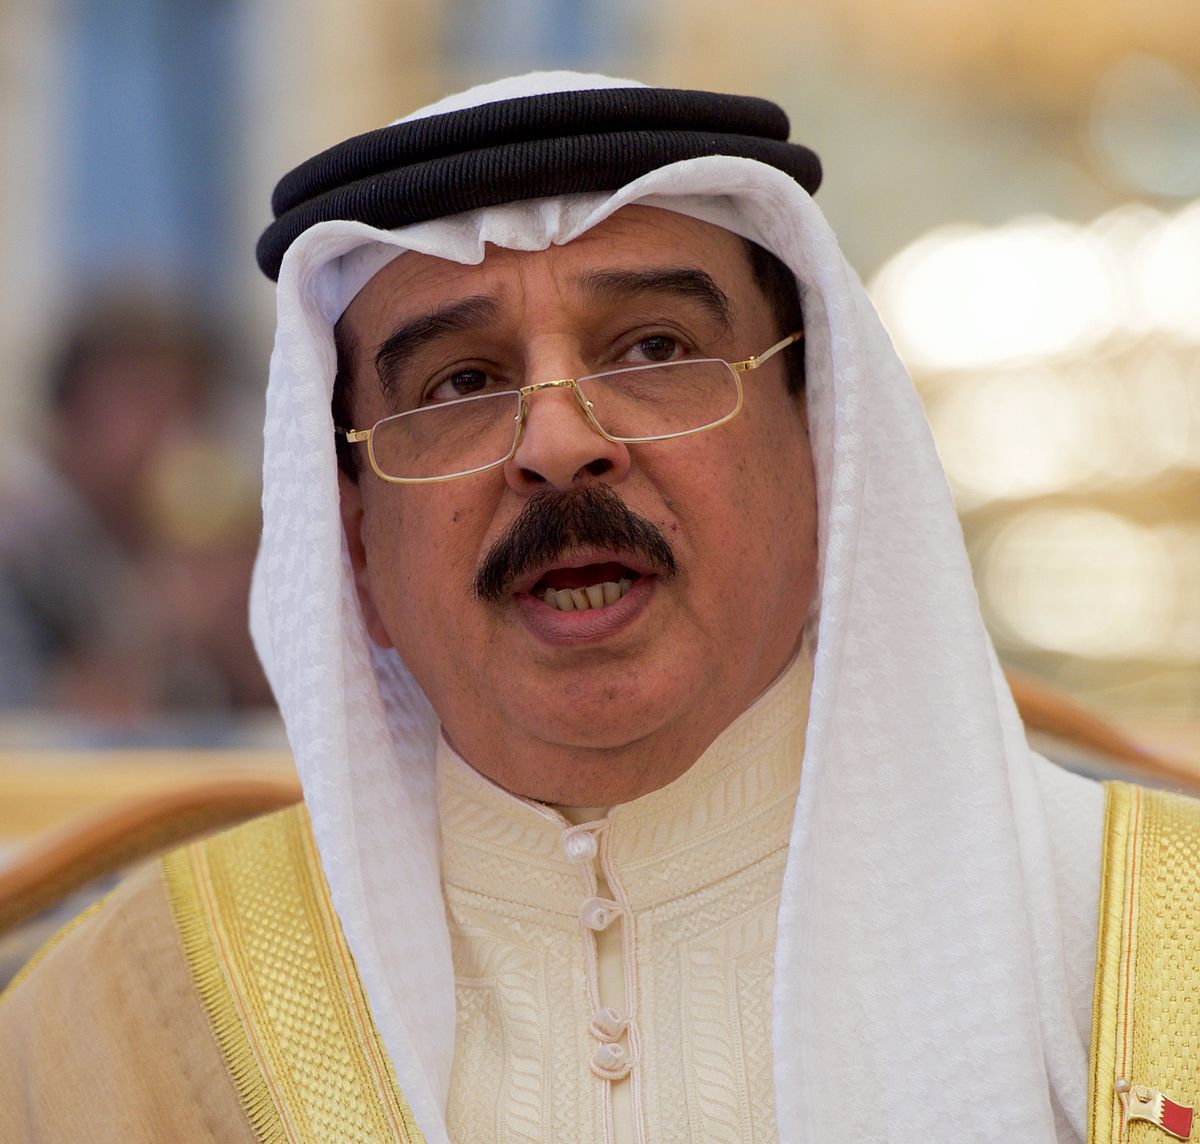 King_Hamad_bin_Isa_Al_Khalifa_of_Bahrain_(cropped)